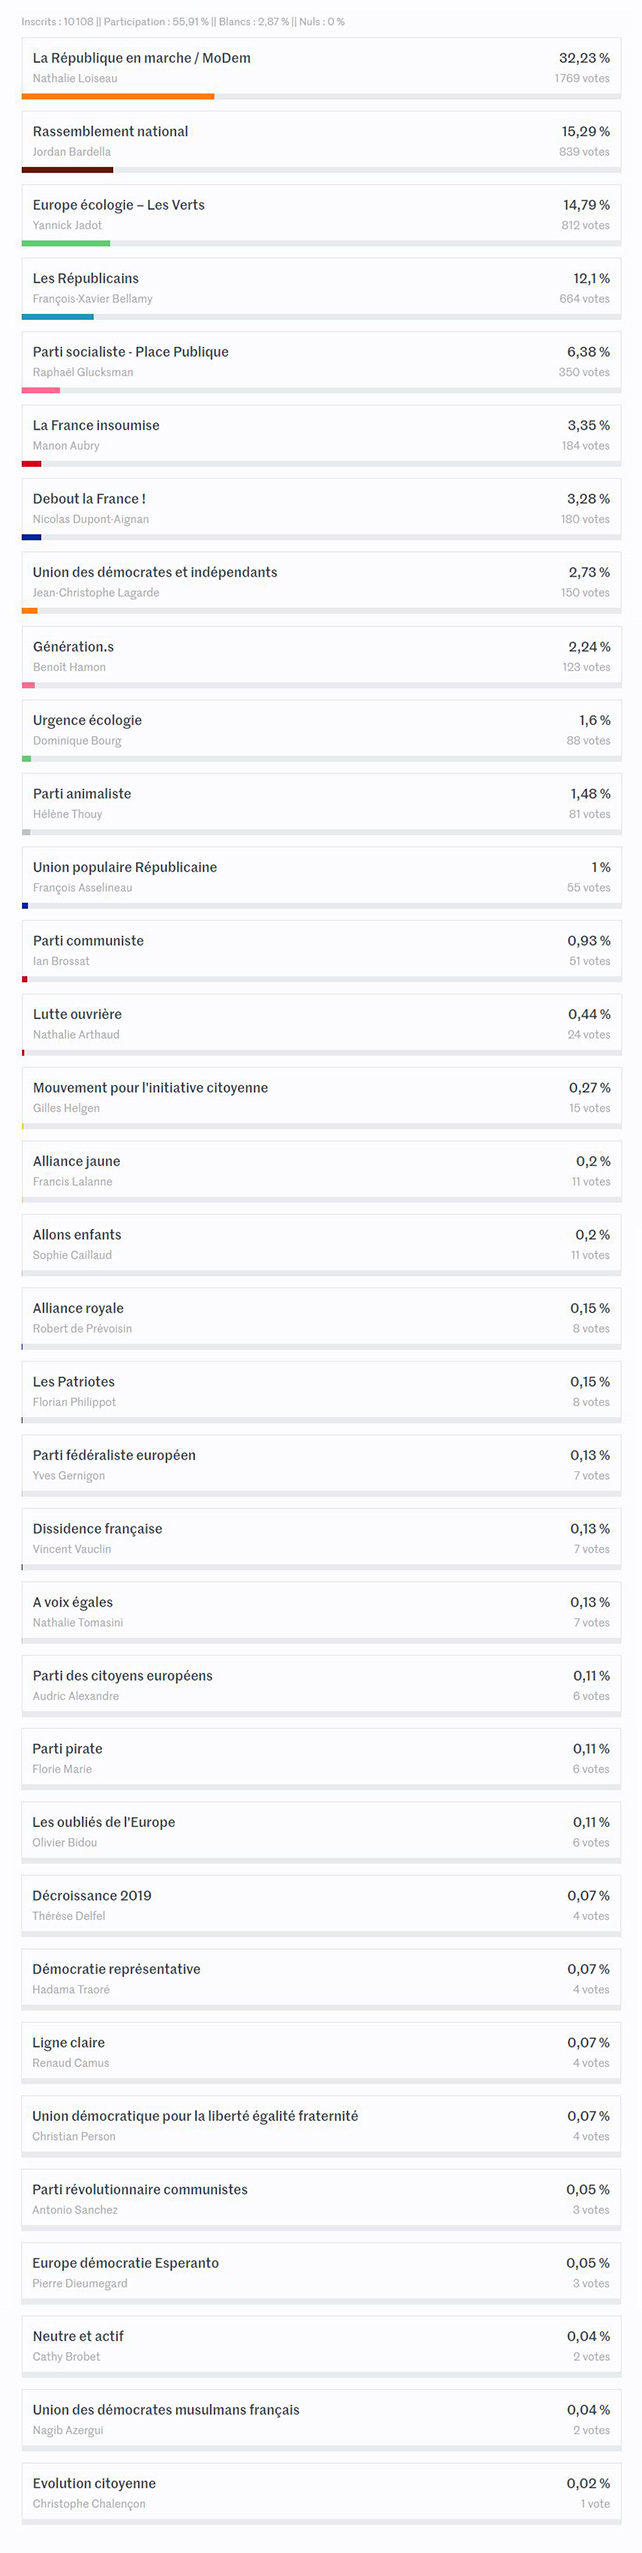 Résultats des vote élections européennes de la commune de Pornichet 2019